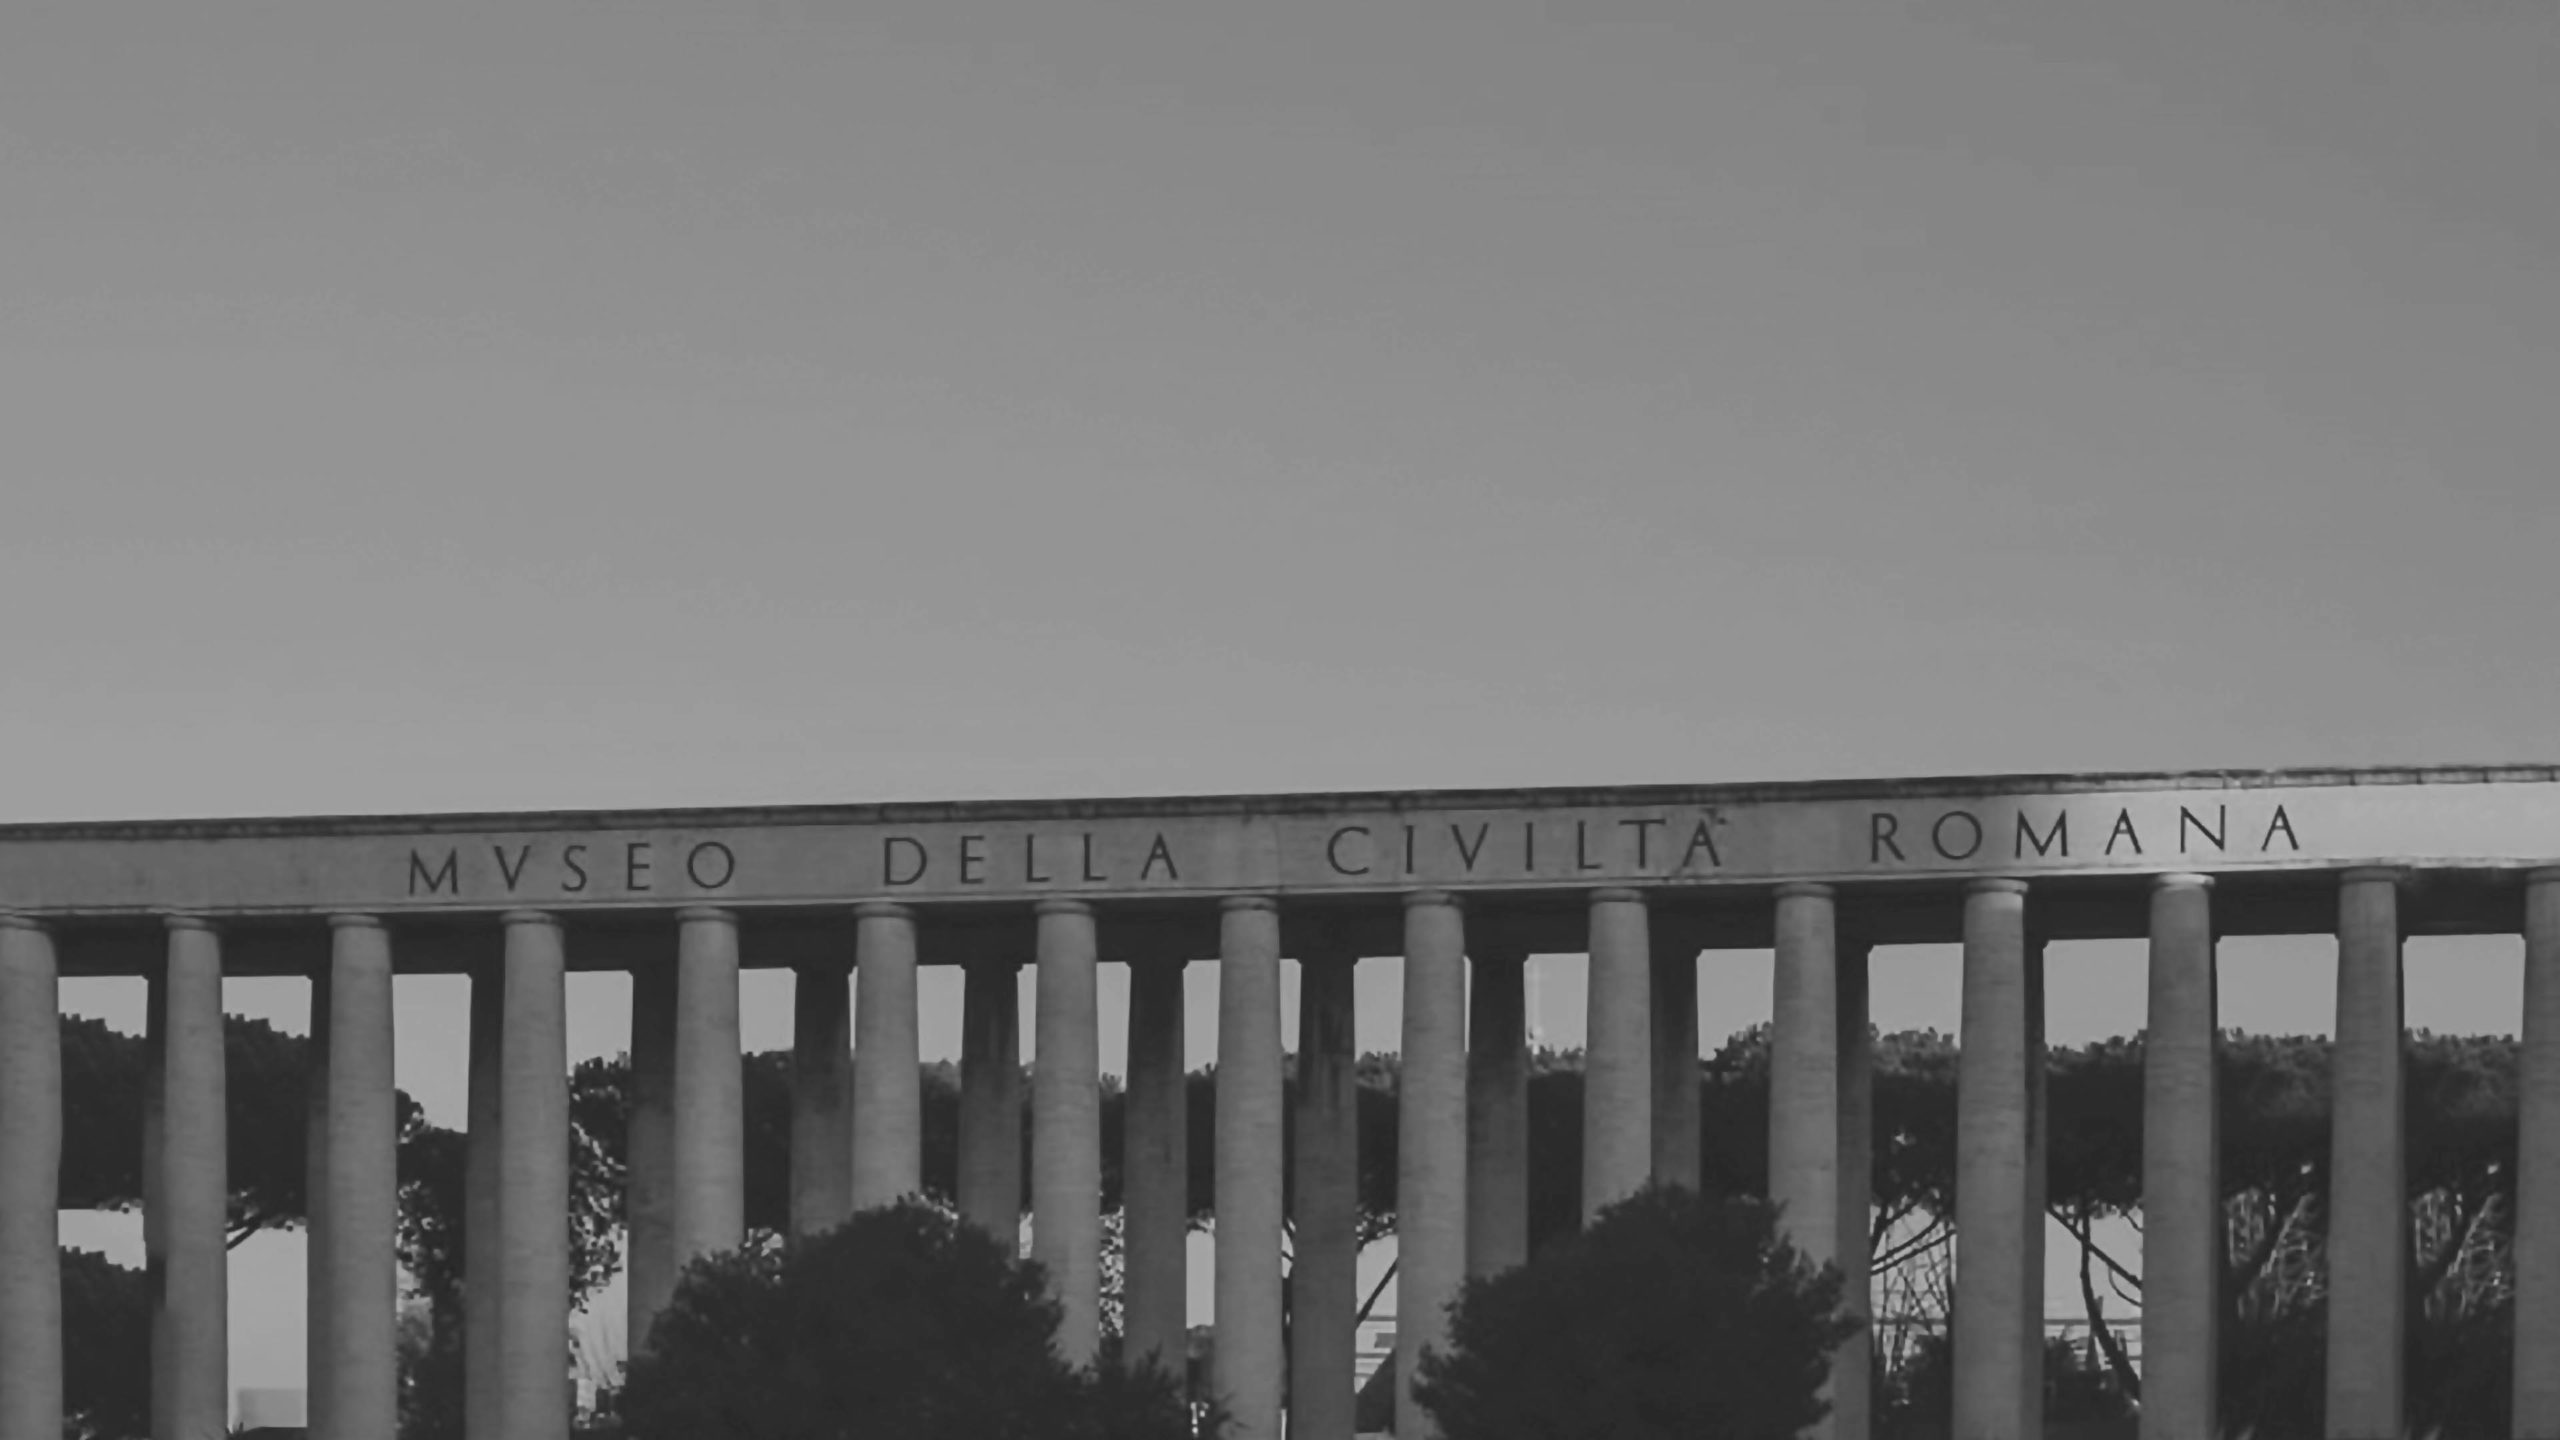 Palazzo della Civilta del Lavoro in EUR Rome Italy